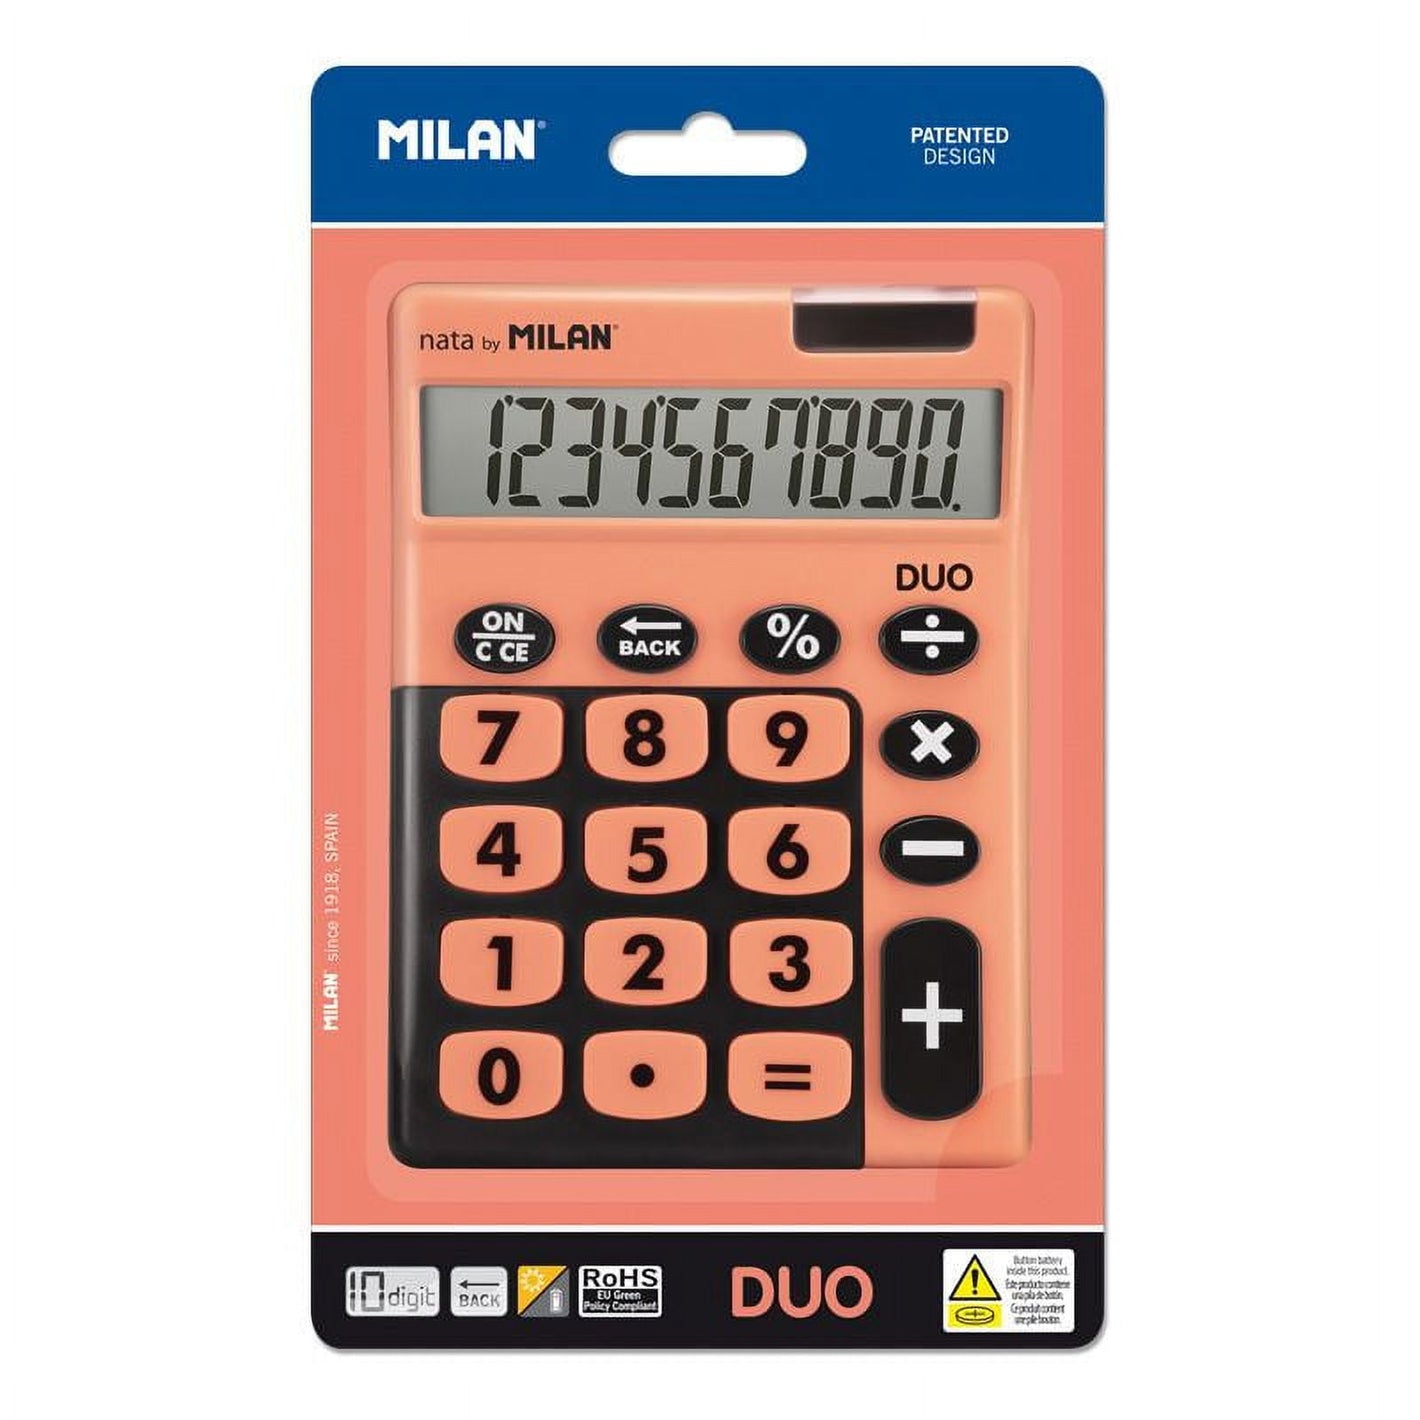 MILAN Duo Desktop Calculator, Battery and Solar Power, Multicolor Orange